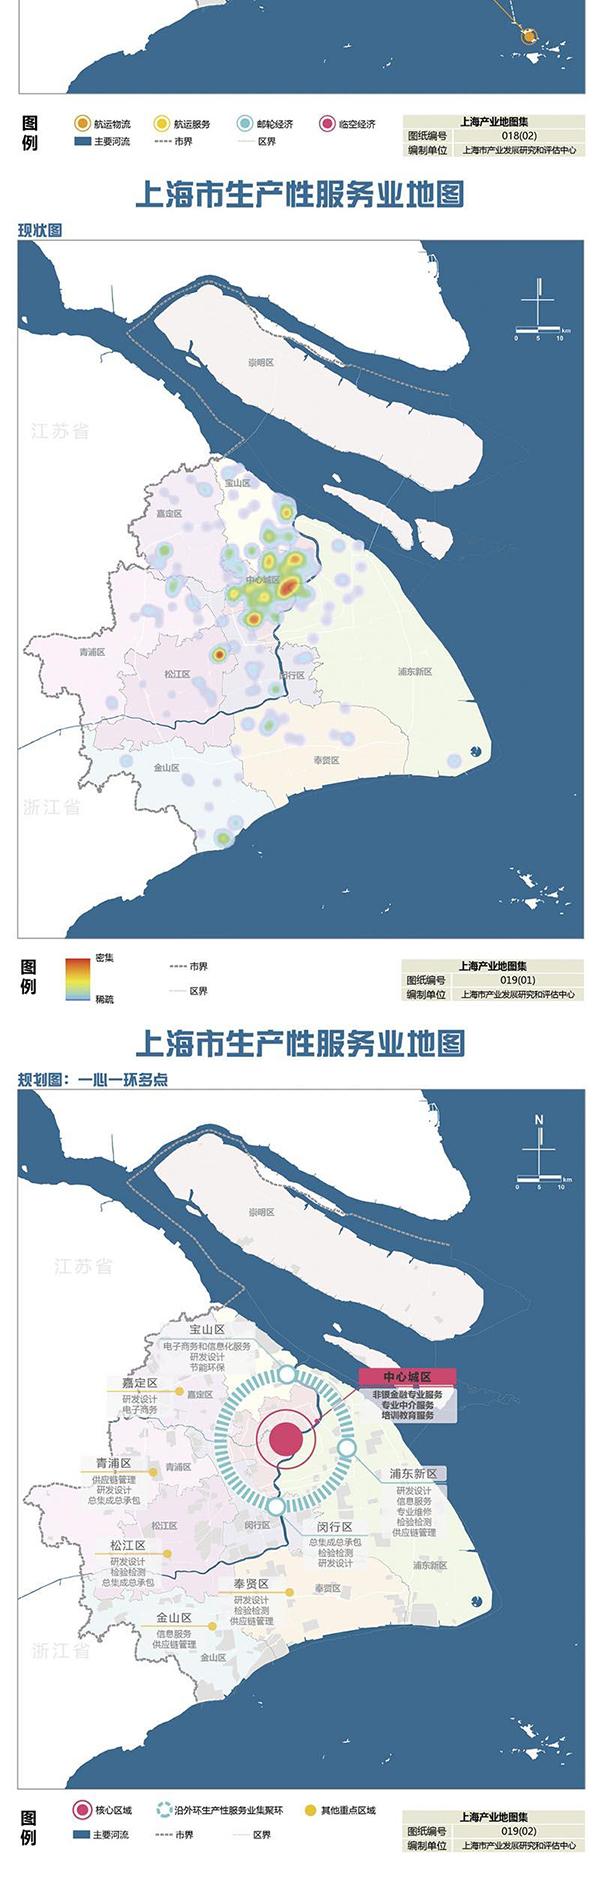 《上海市产业地图》正式出炉：未来产业发展的布局图、作战图